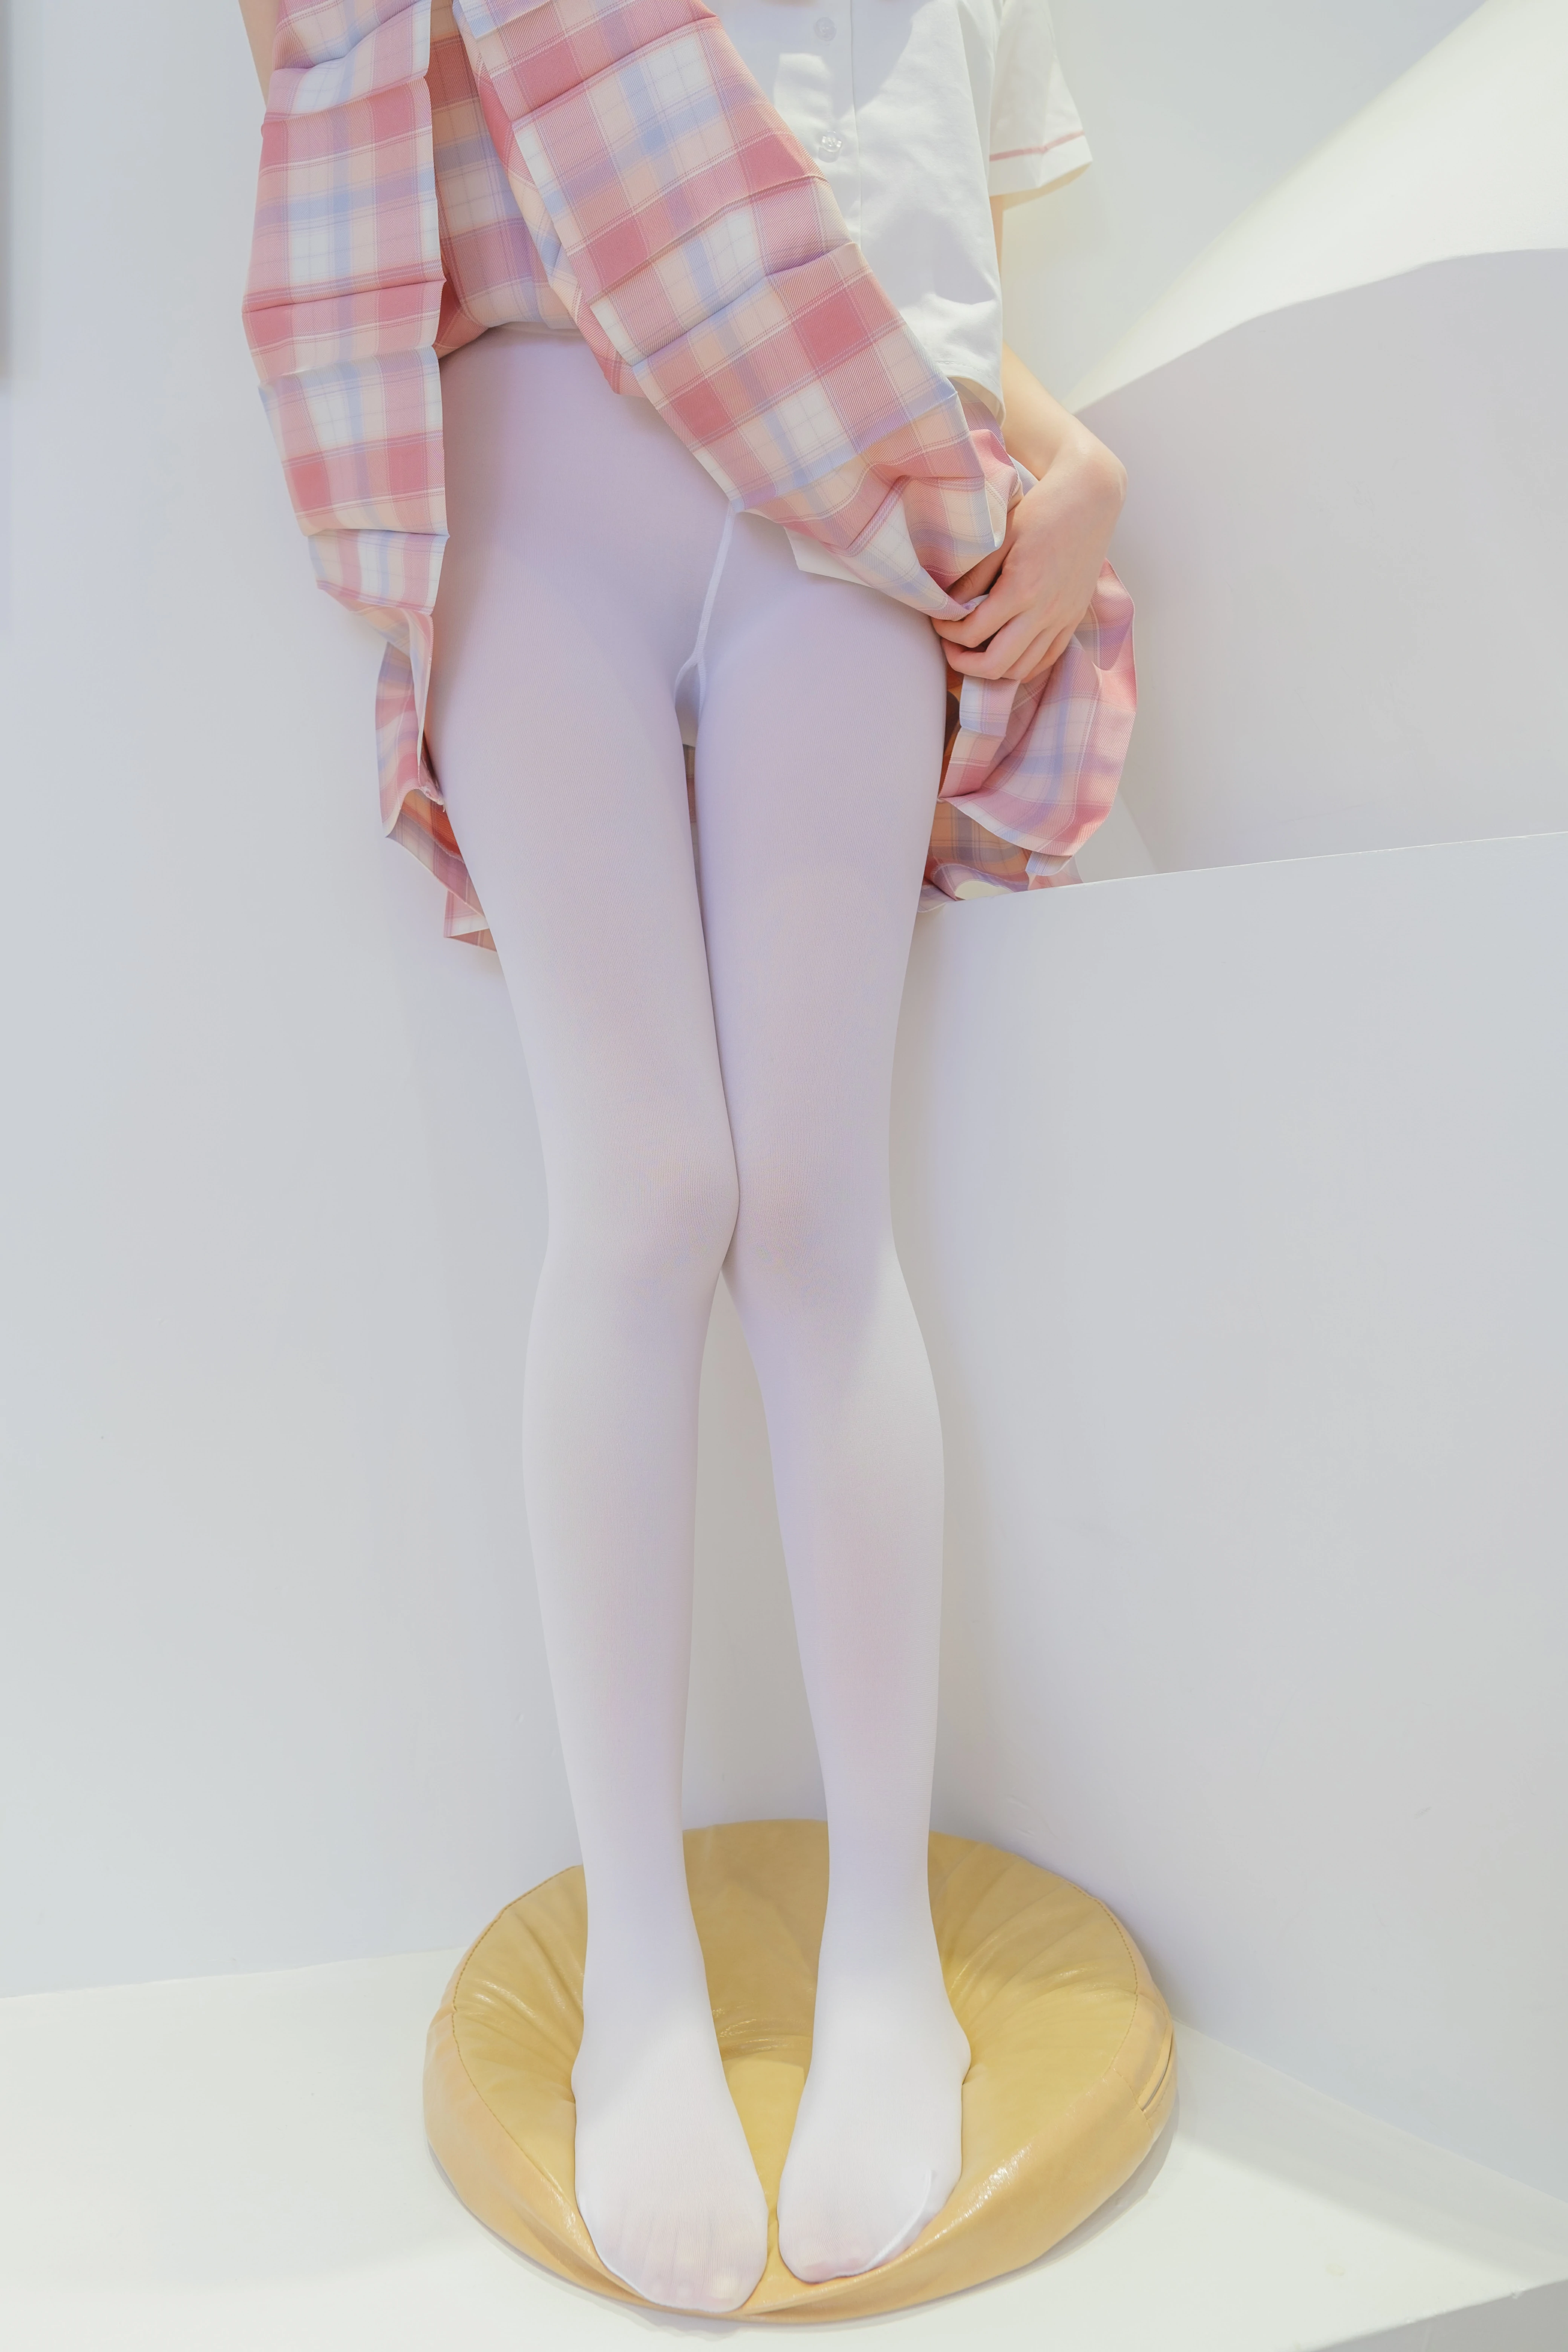 [森萝财团]GZAY3 酒店JK制服小萝莉 白色衬衫与粉色短裙加白色丝袜美腿性感私房写真集,0014